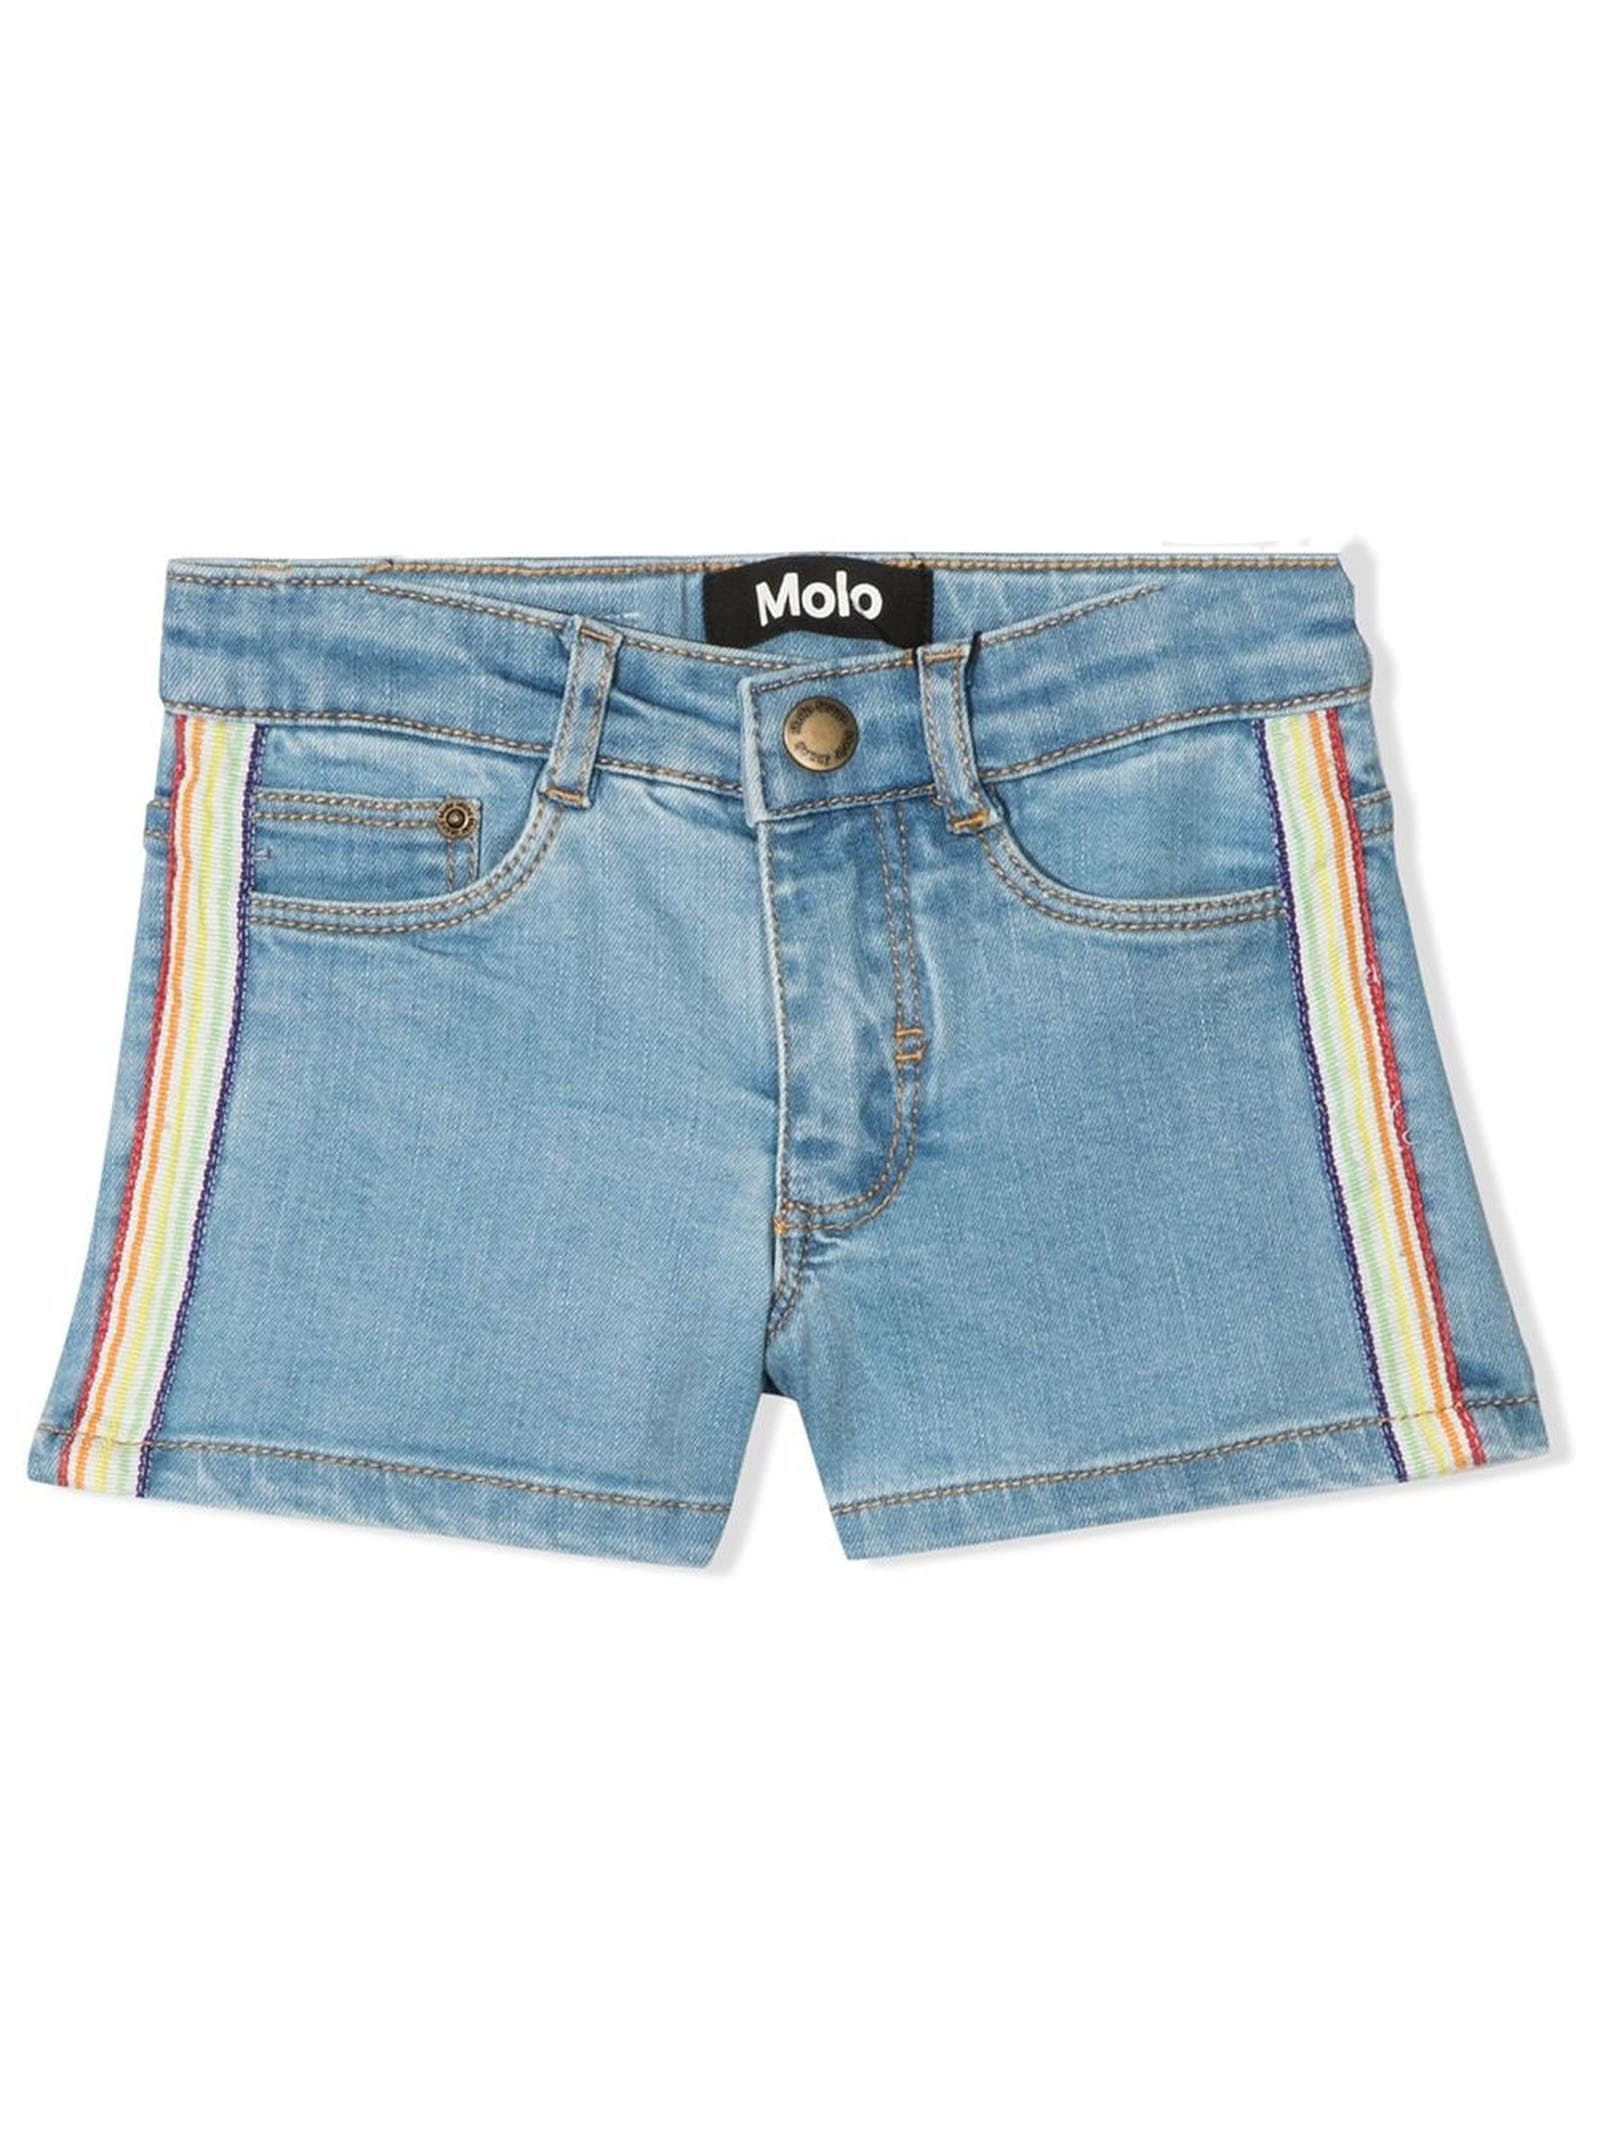 Molo Blue Cotton Blend Shorts